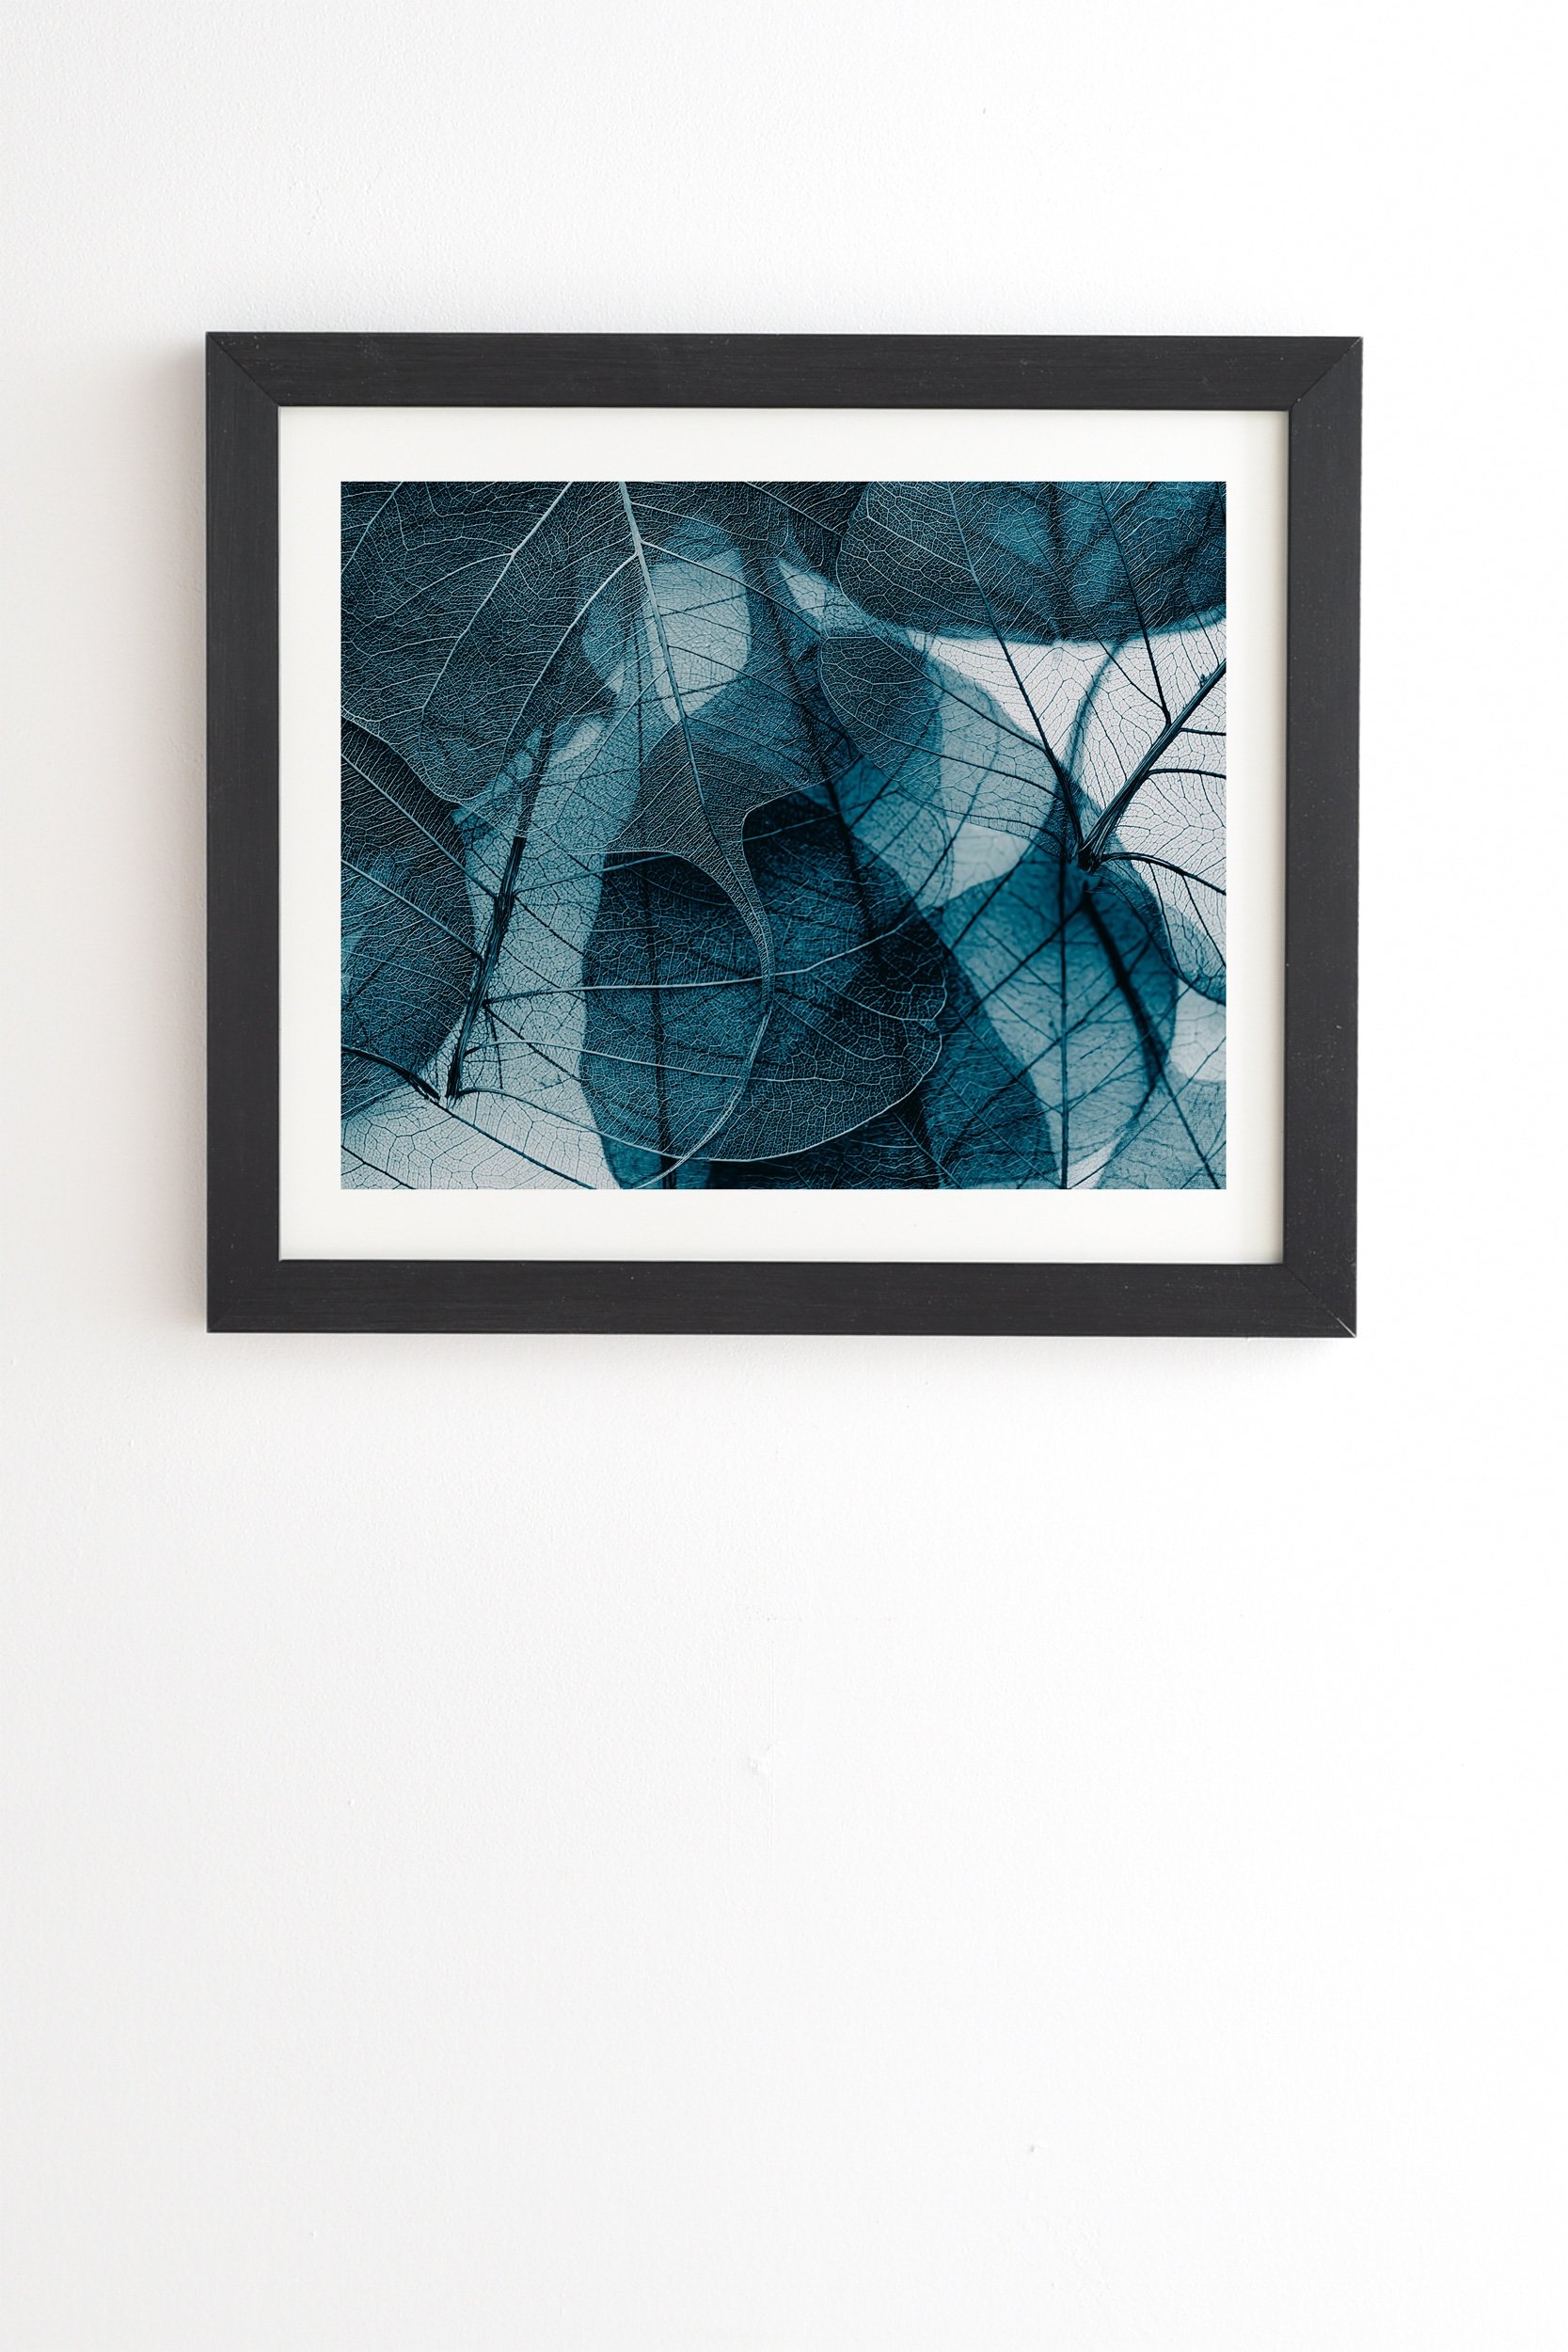 Ingrid Beddoes Denim blue Black Framed Wall Art - 8" x 9.5" - Image 0